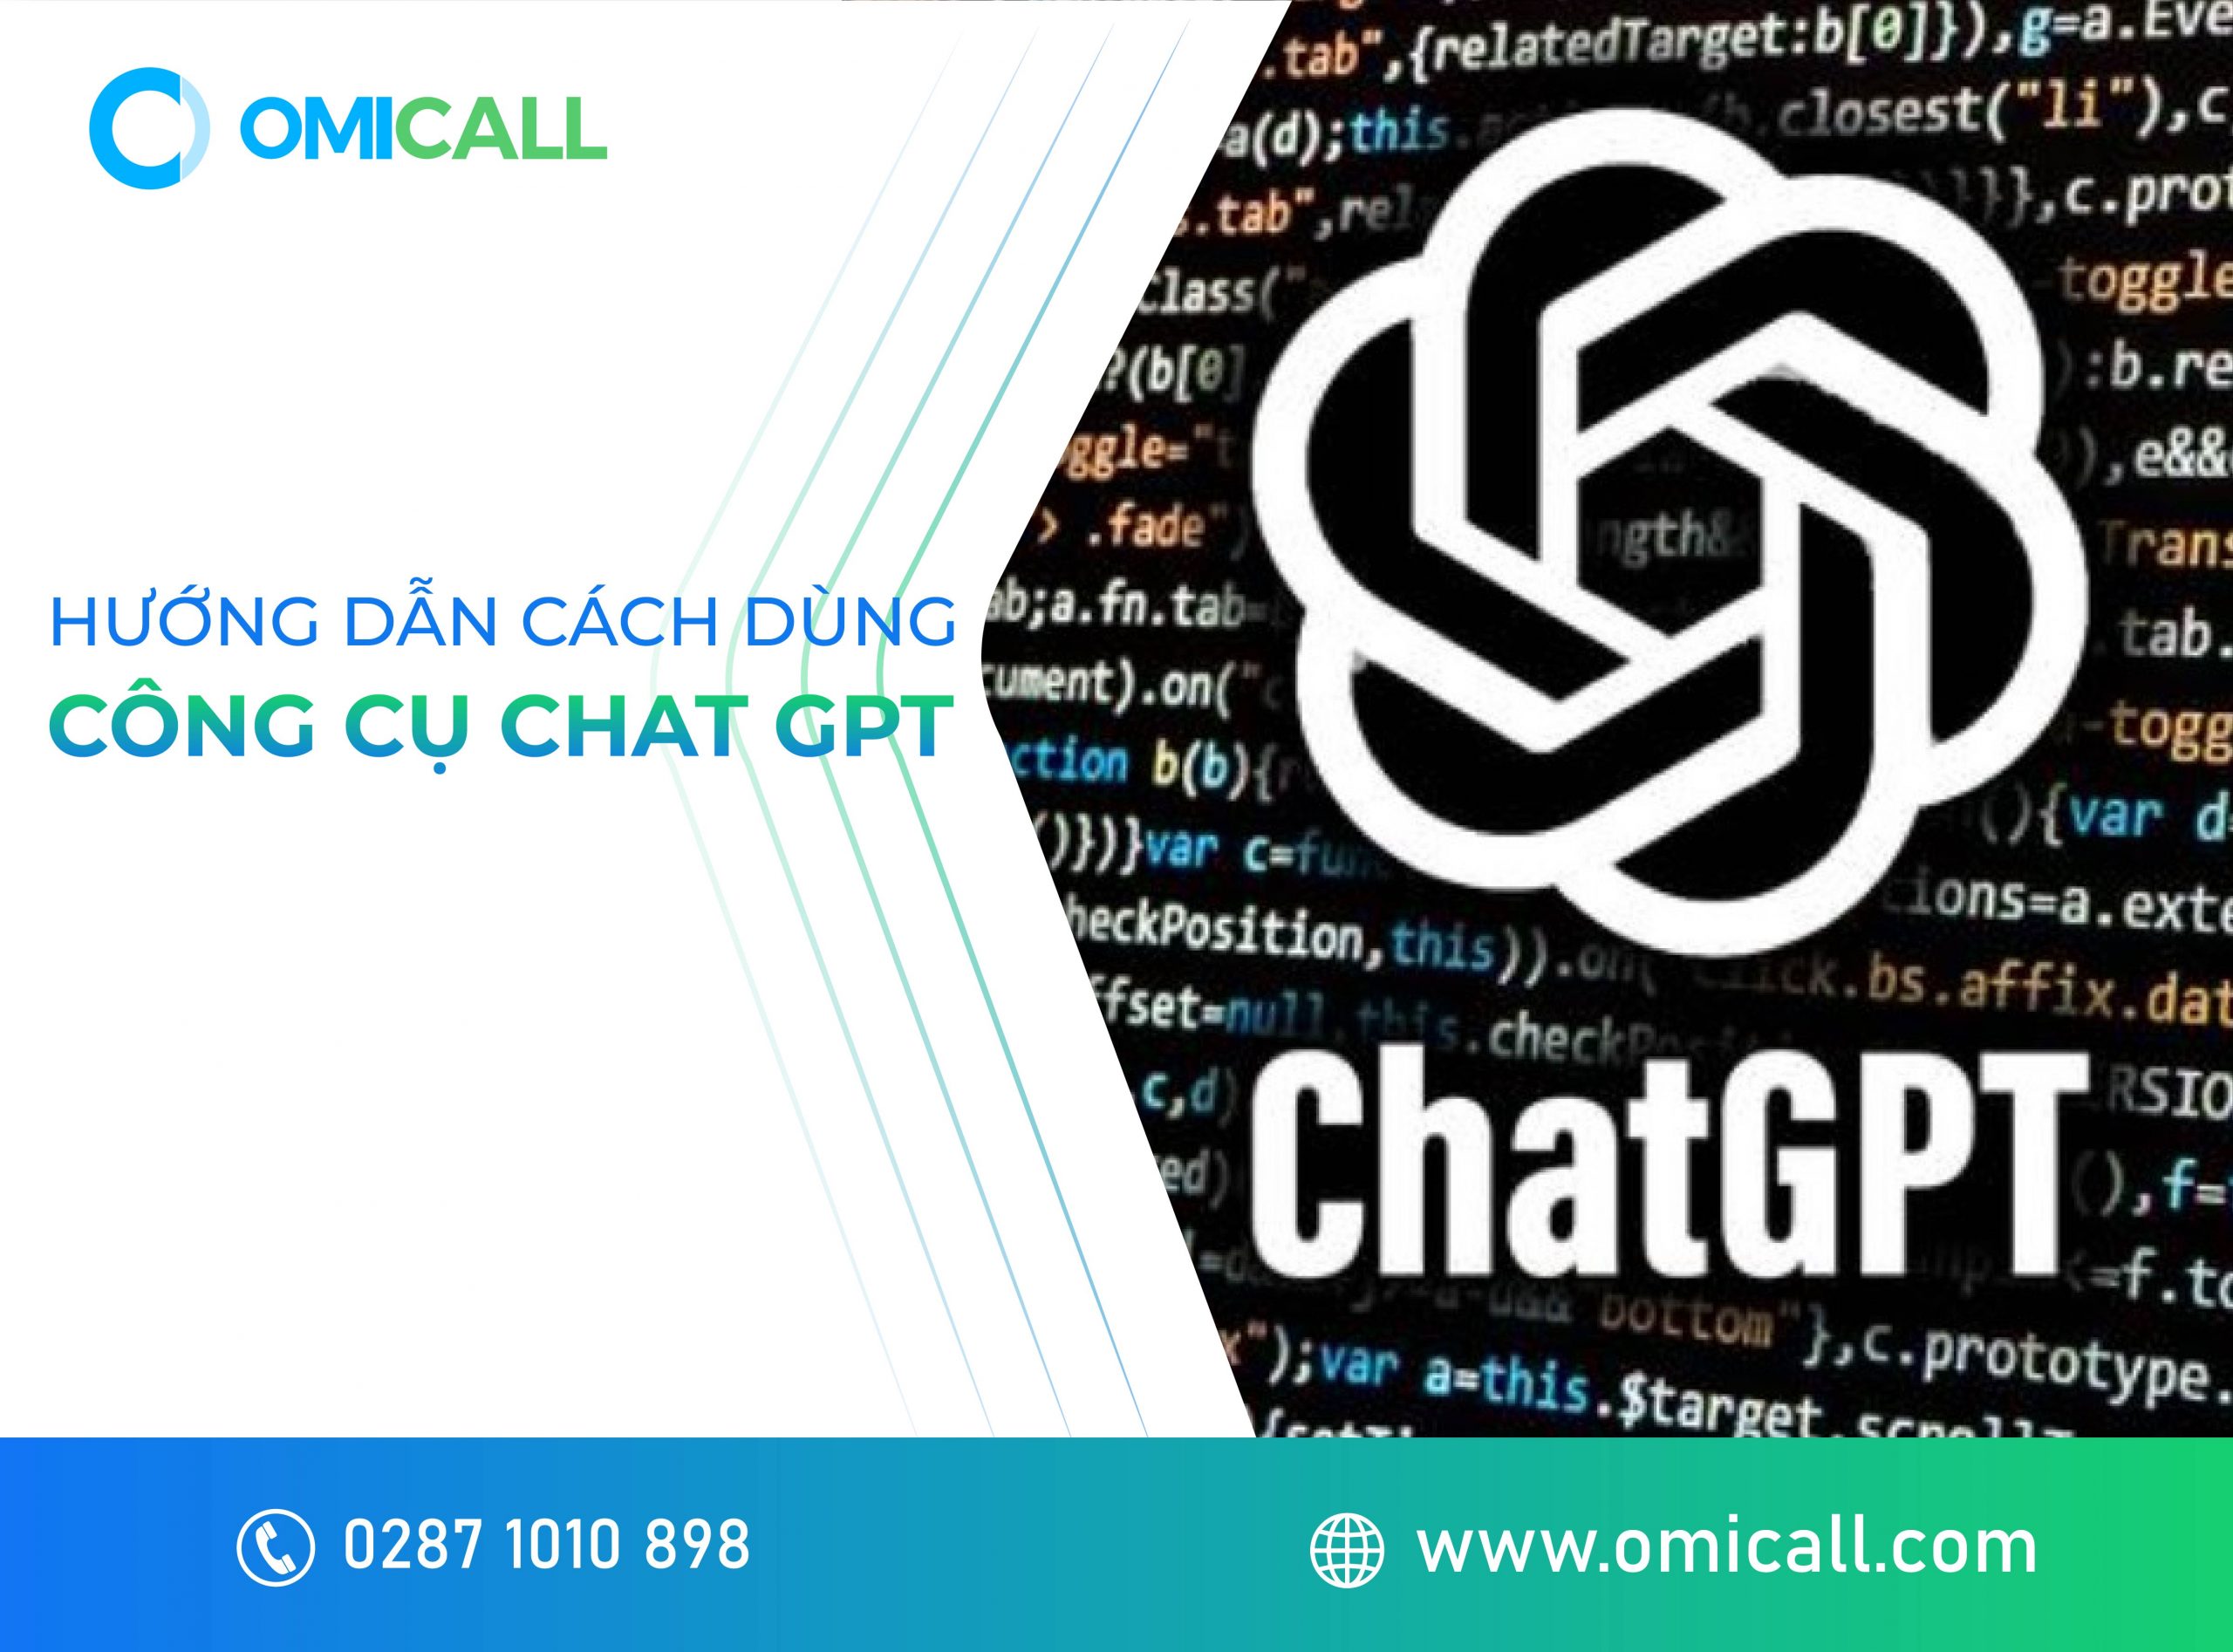 Hướng dẫn cách dùng Chat GPT dễ hiểu Cach-dung-chat-gpt-01-scaled